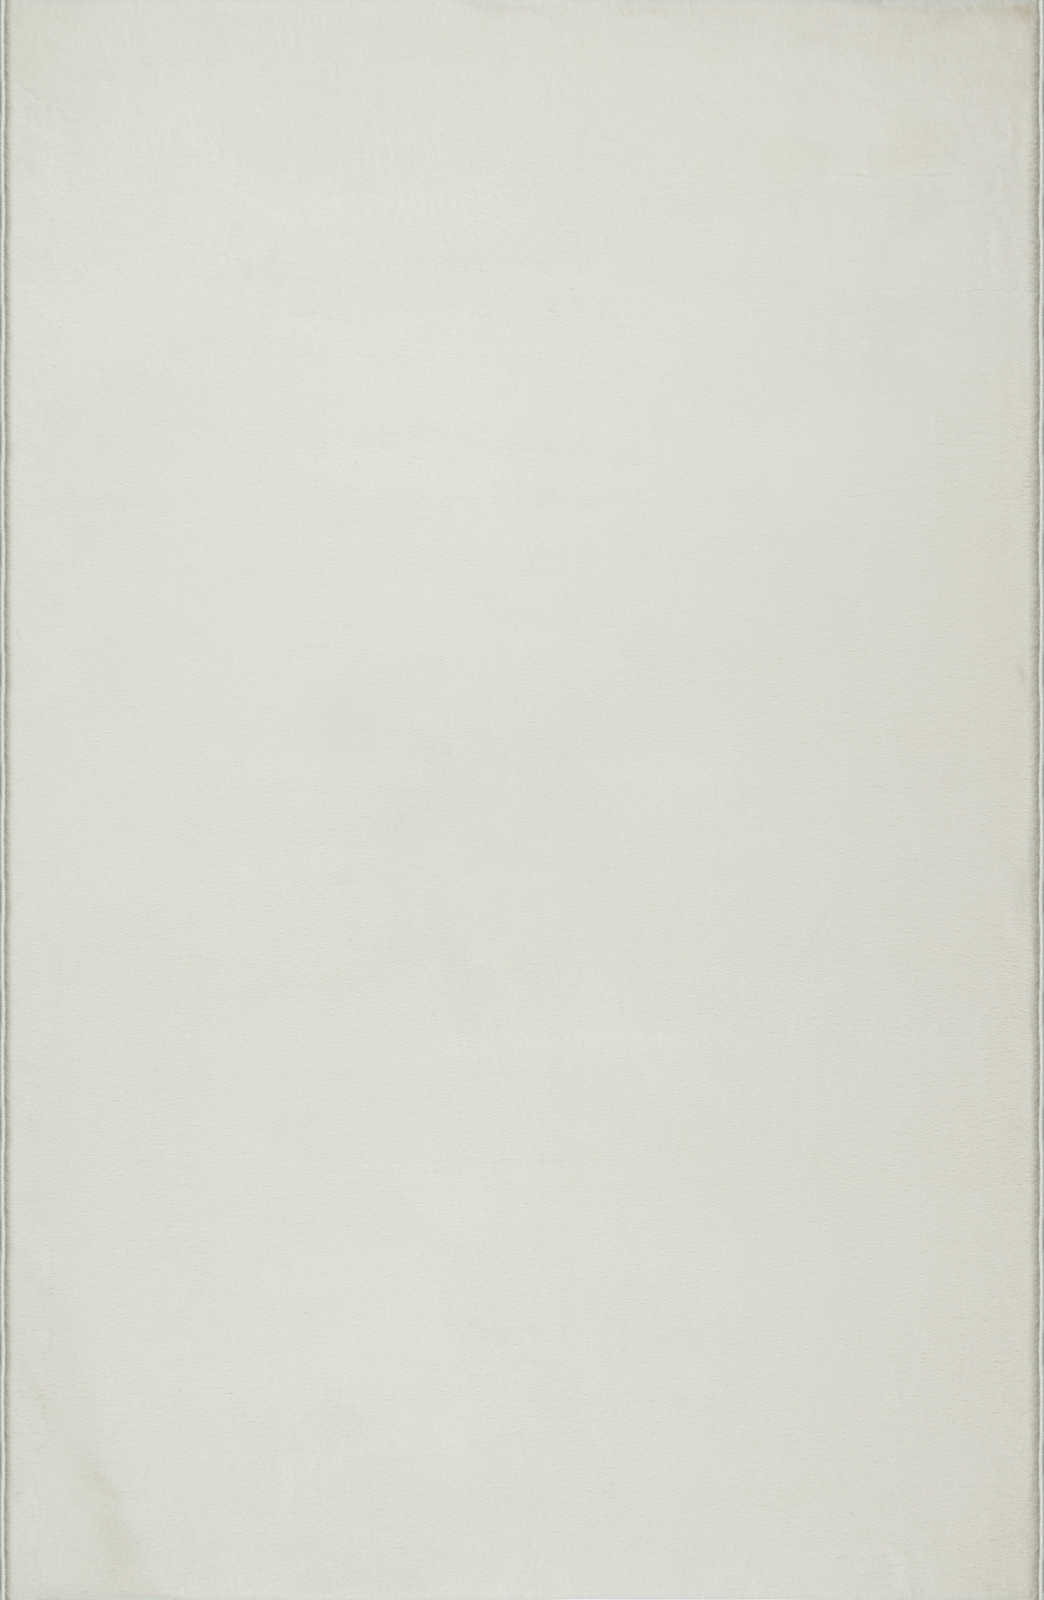             Sanfter Hochflor Teppich in Creme – 220 x 160 cm
        